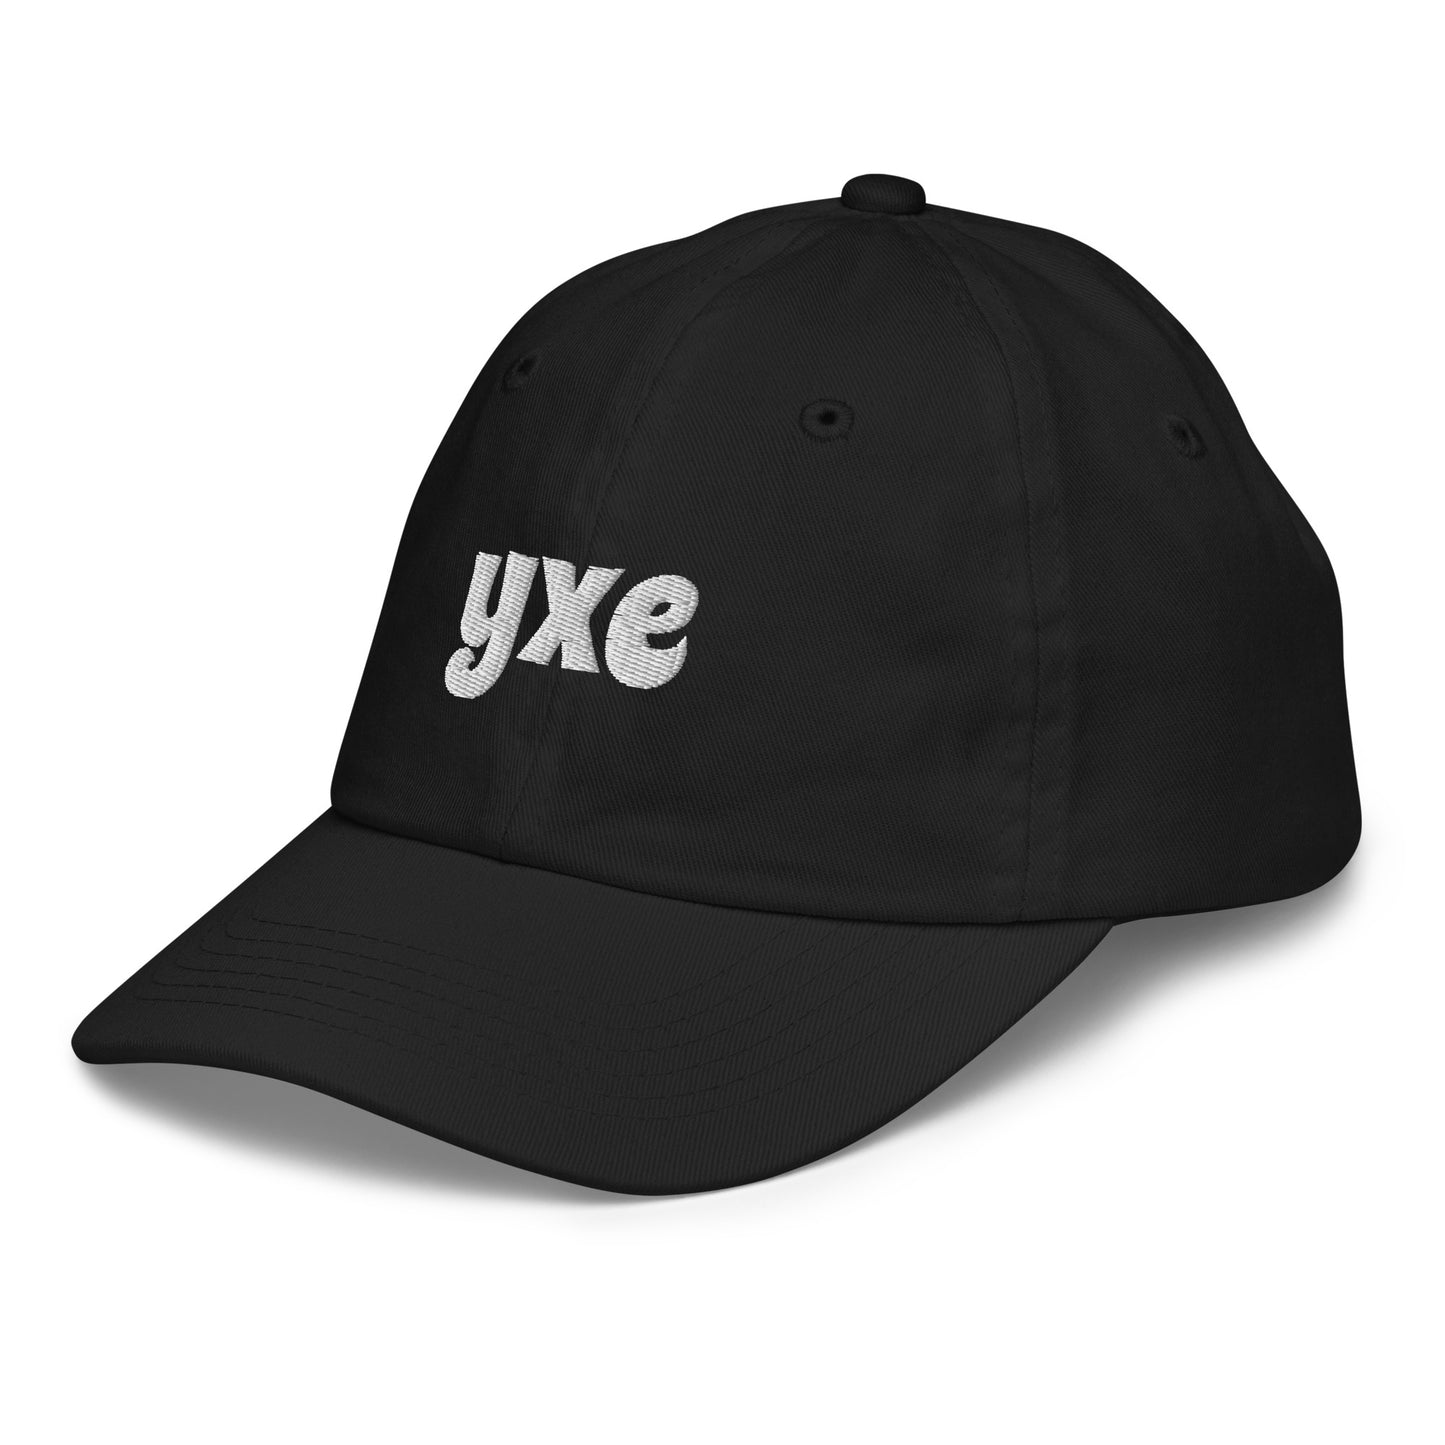 Groovy Kid's Baseball Cap - White • YXE Saskatoon • YHM Designs - Image 11